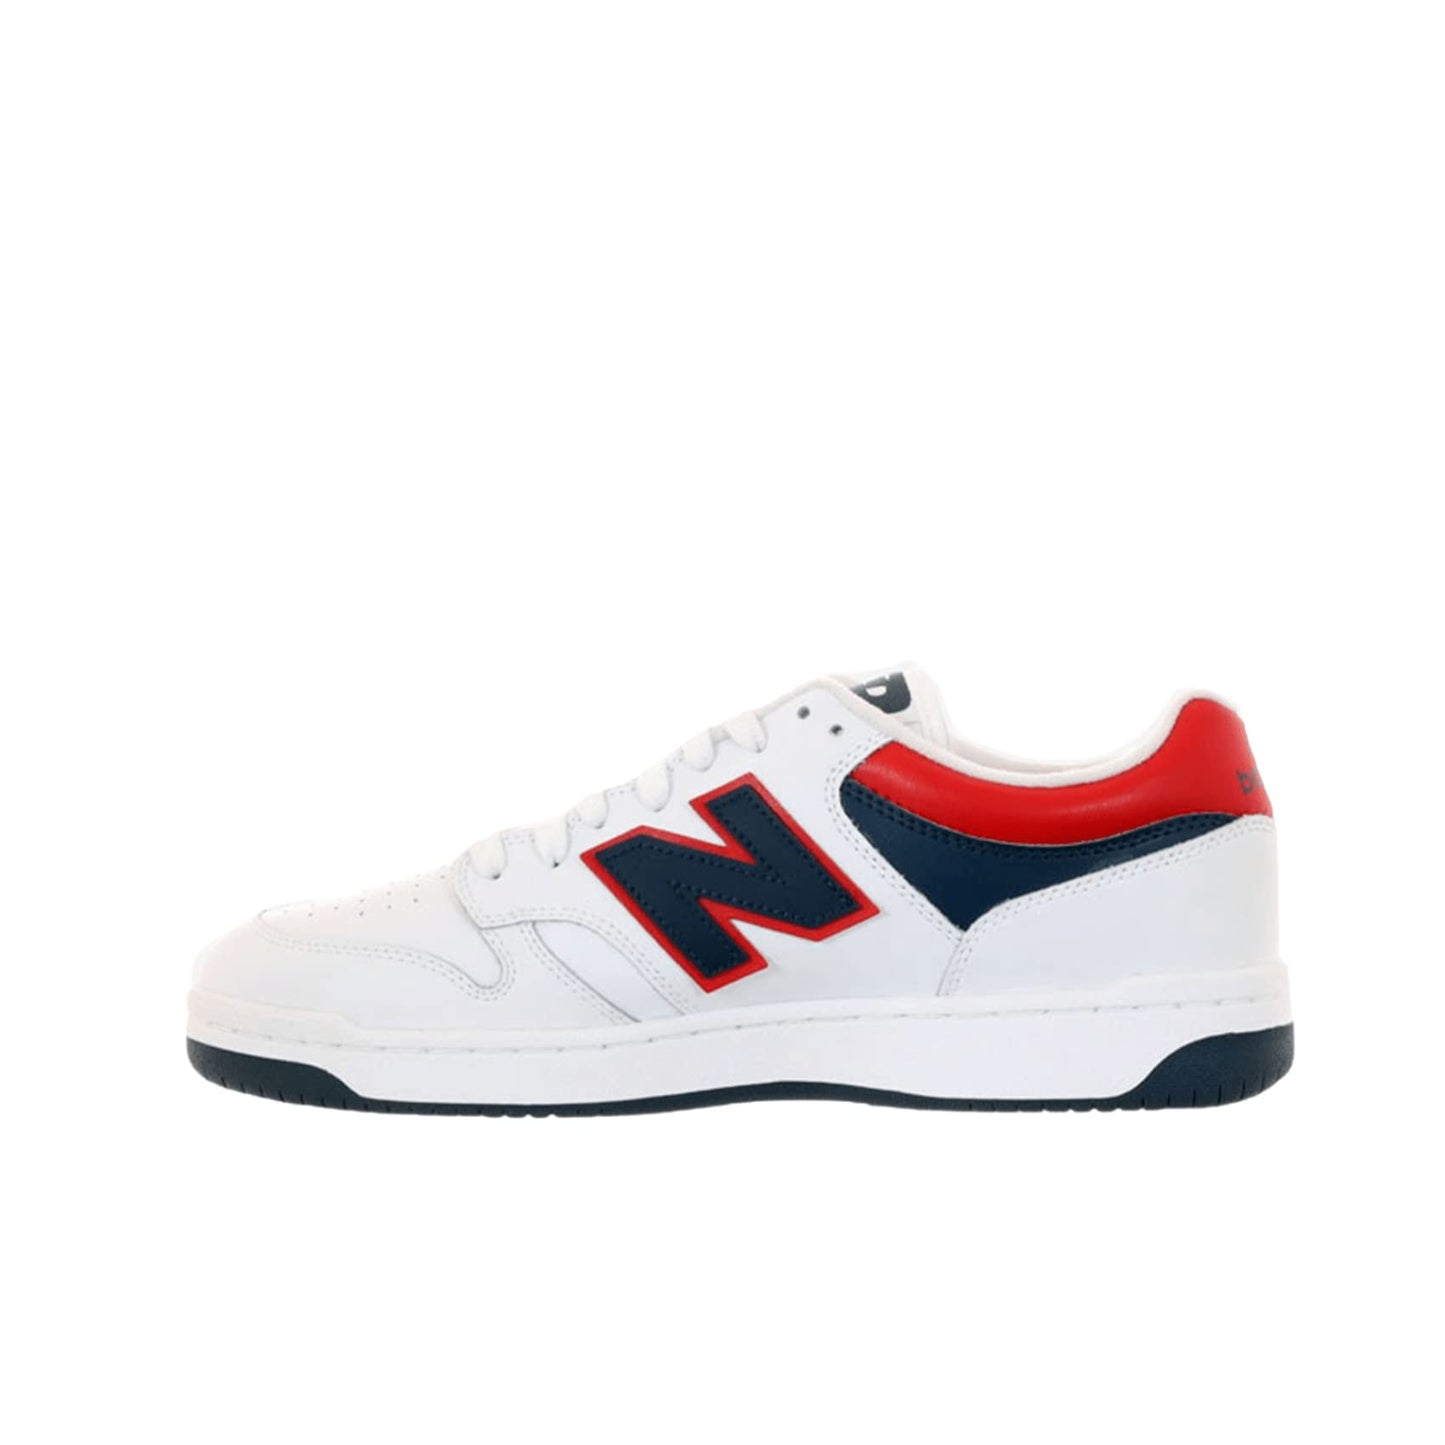 New Balance Unisex-Adult BB480 V1 Sneaker, White/Natural Indigo/Team Red, 4